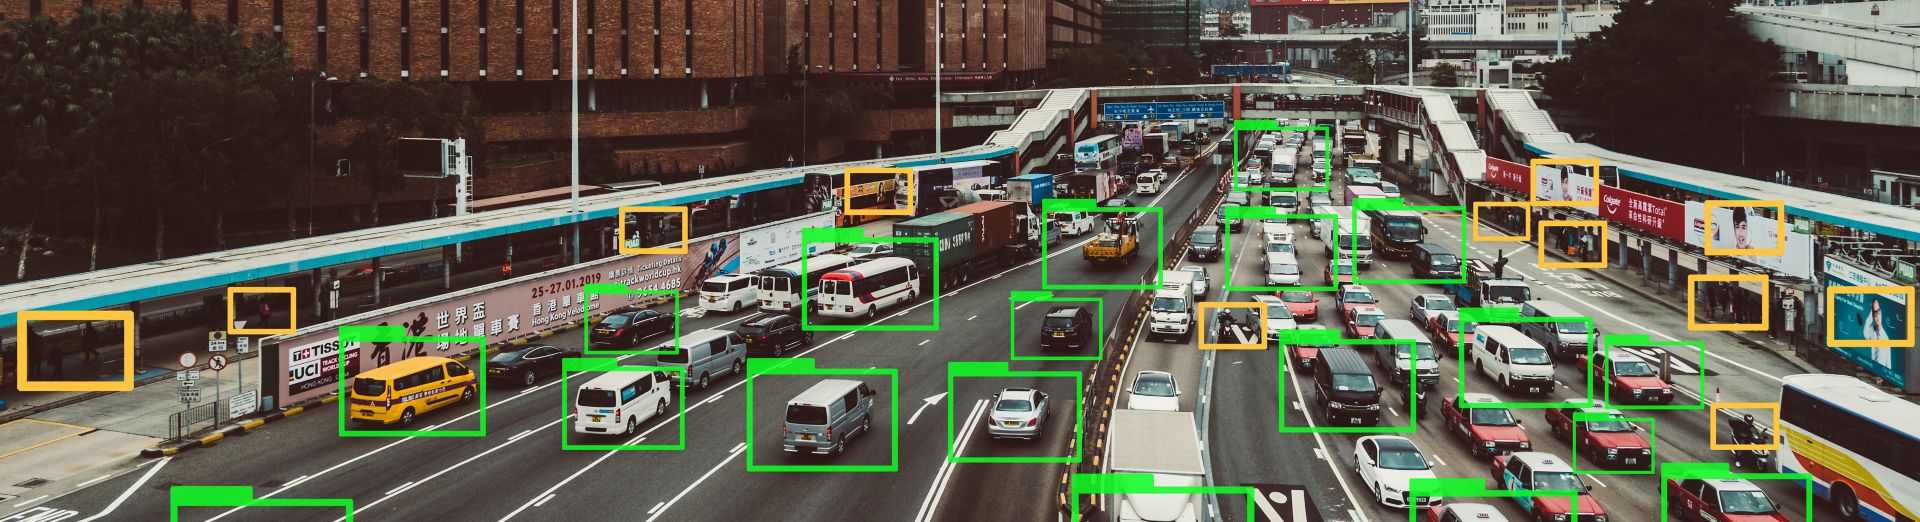 Проследяване на автомобили по магистрала с технология с машинно самообучение